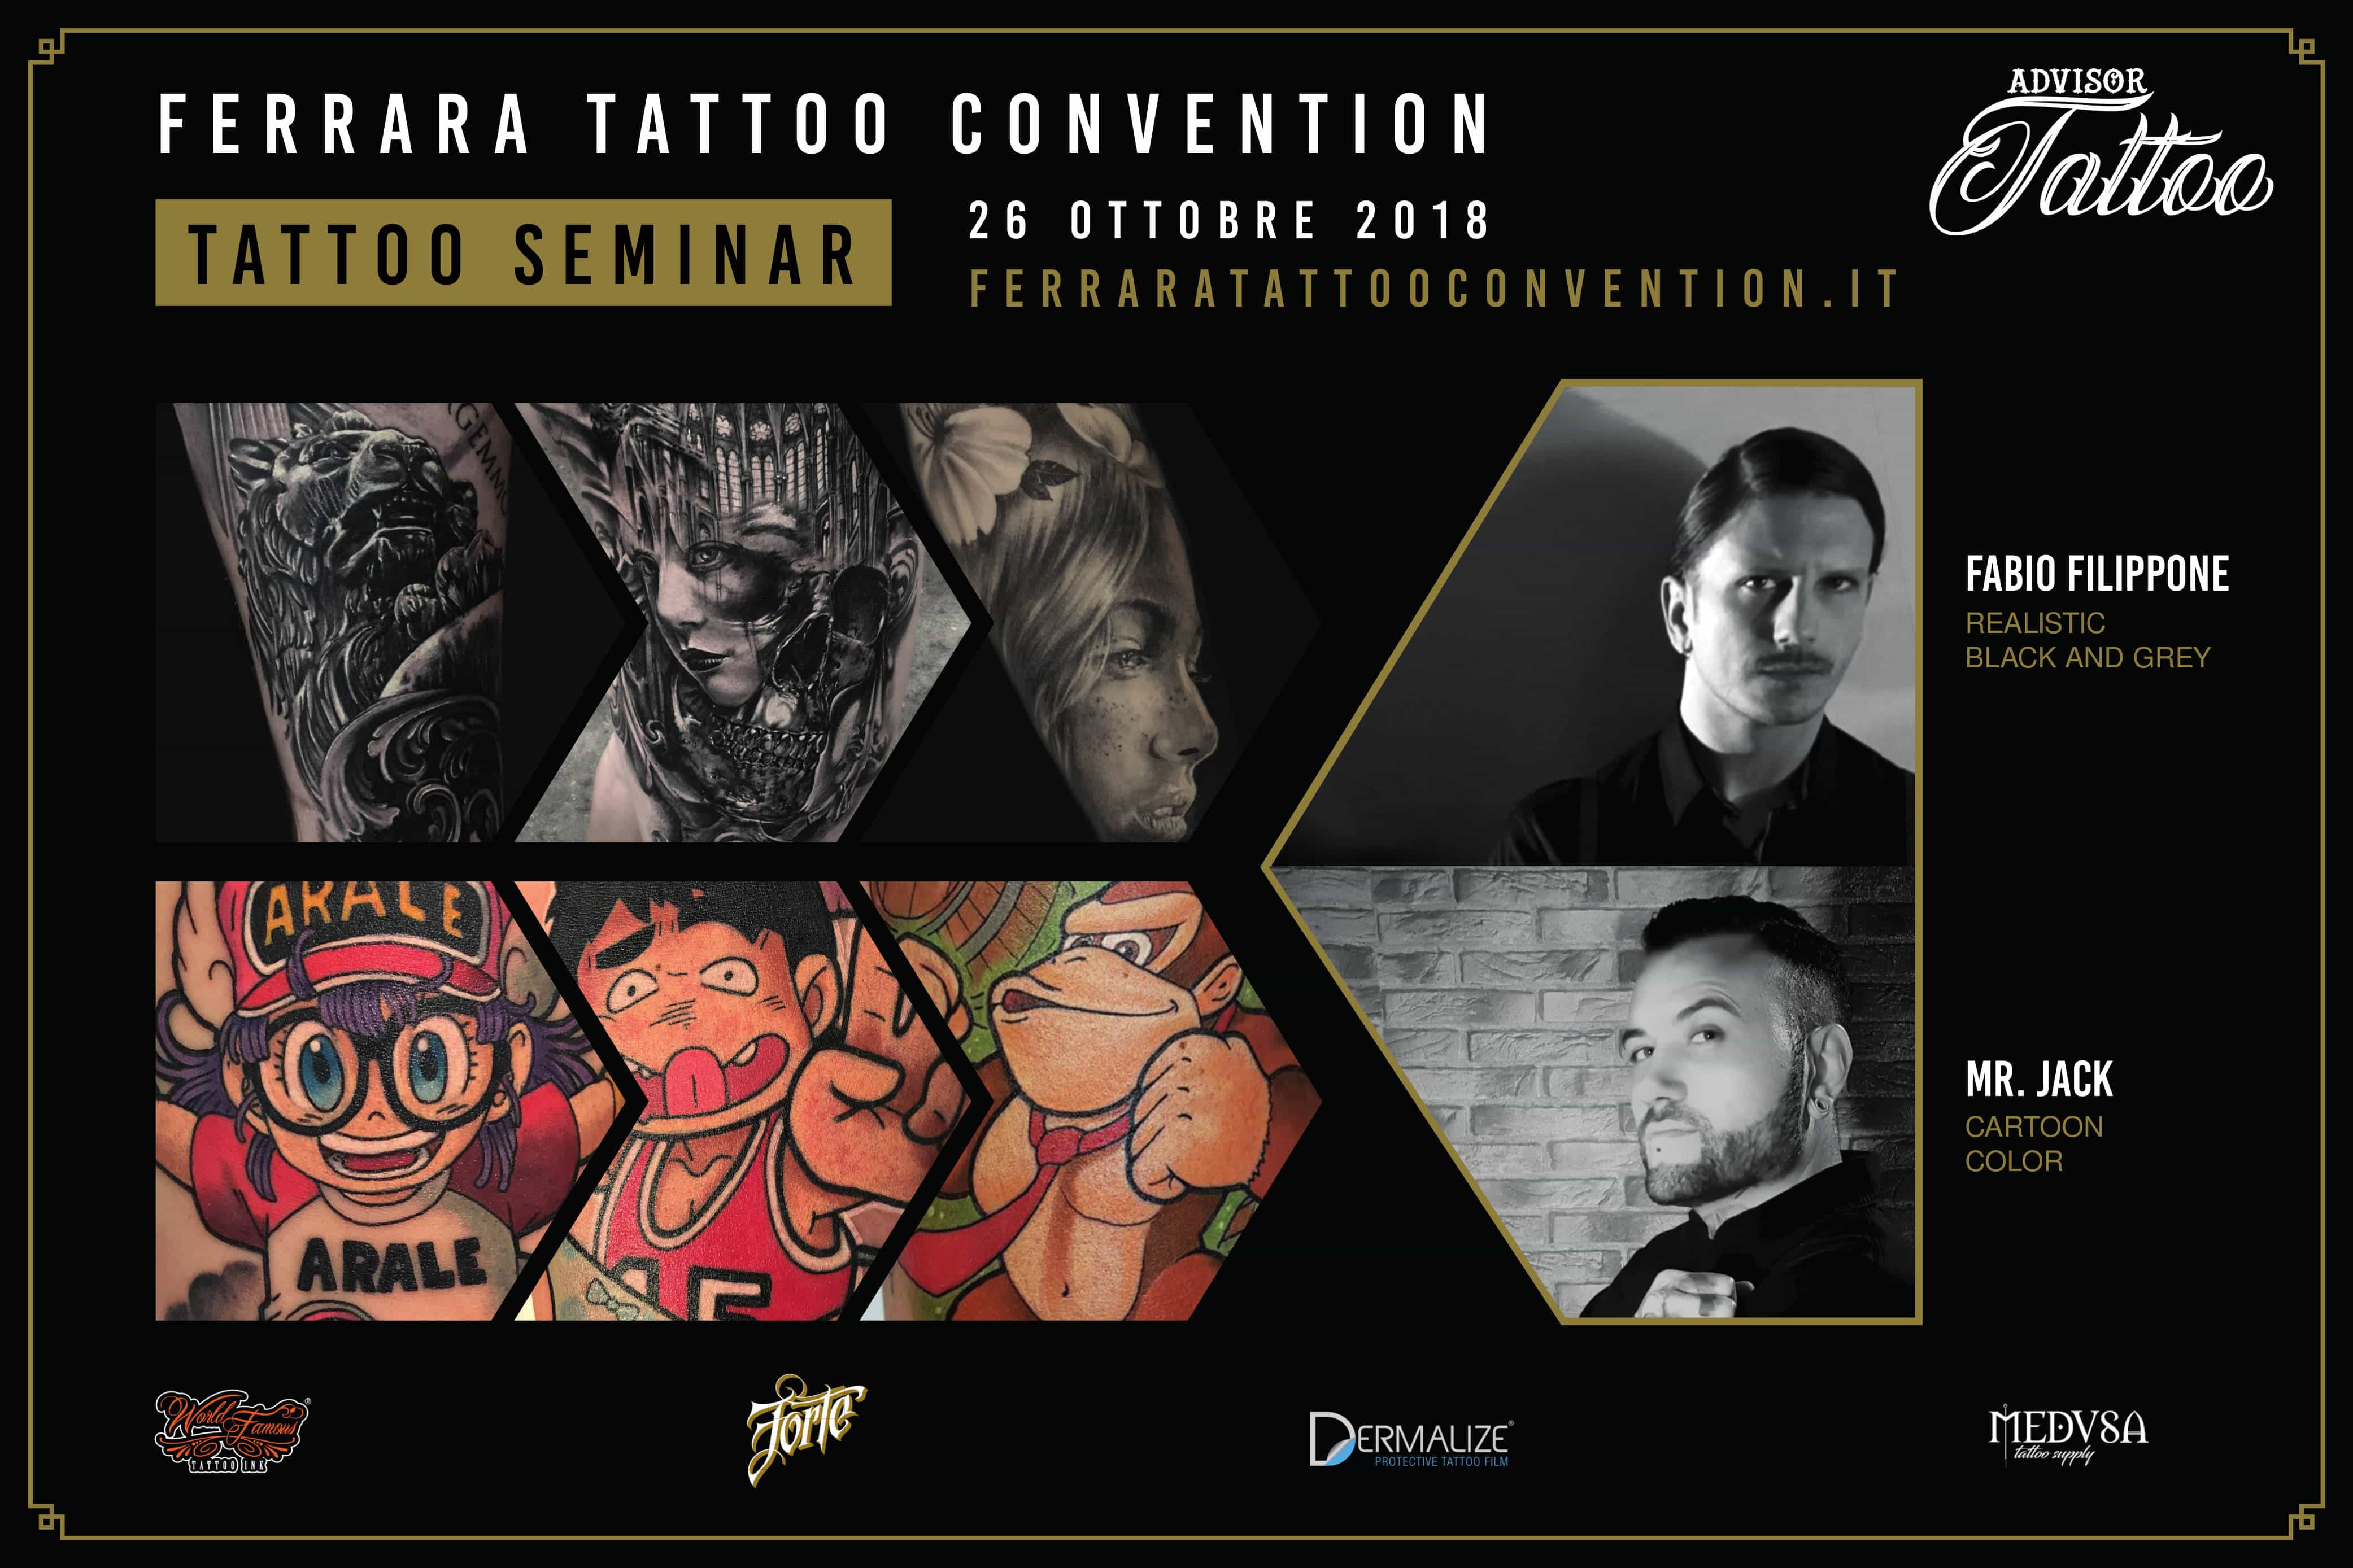 Tattoo seminar